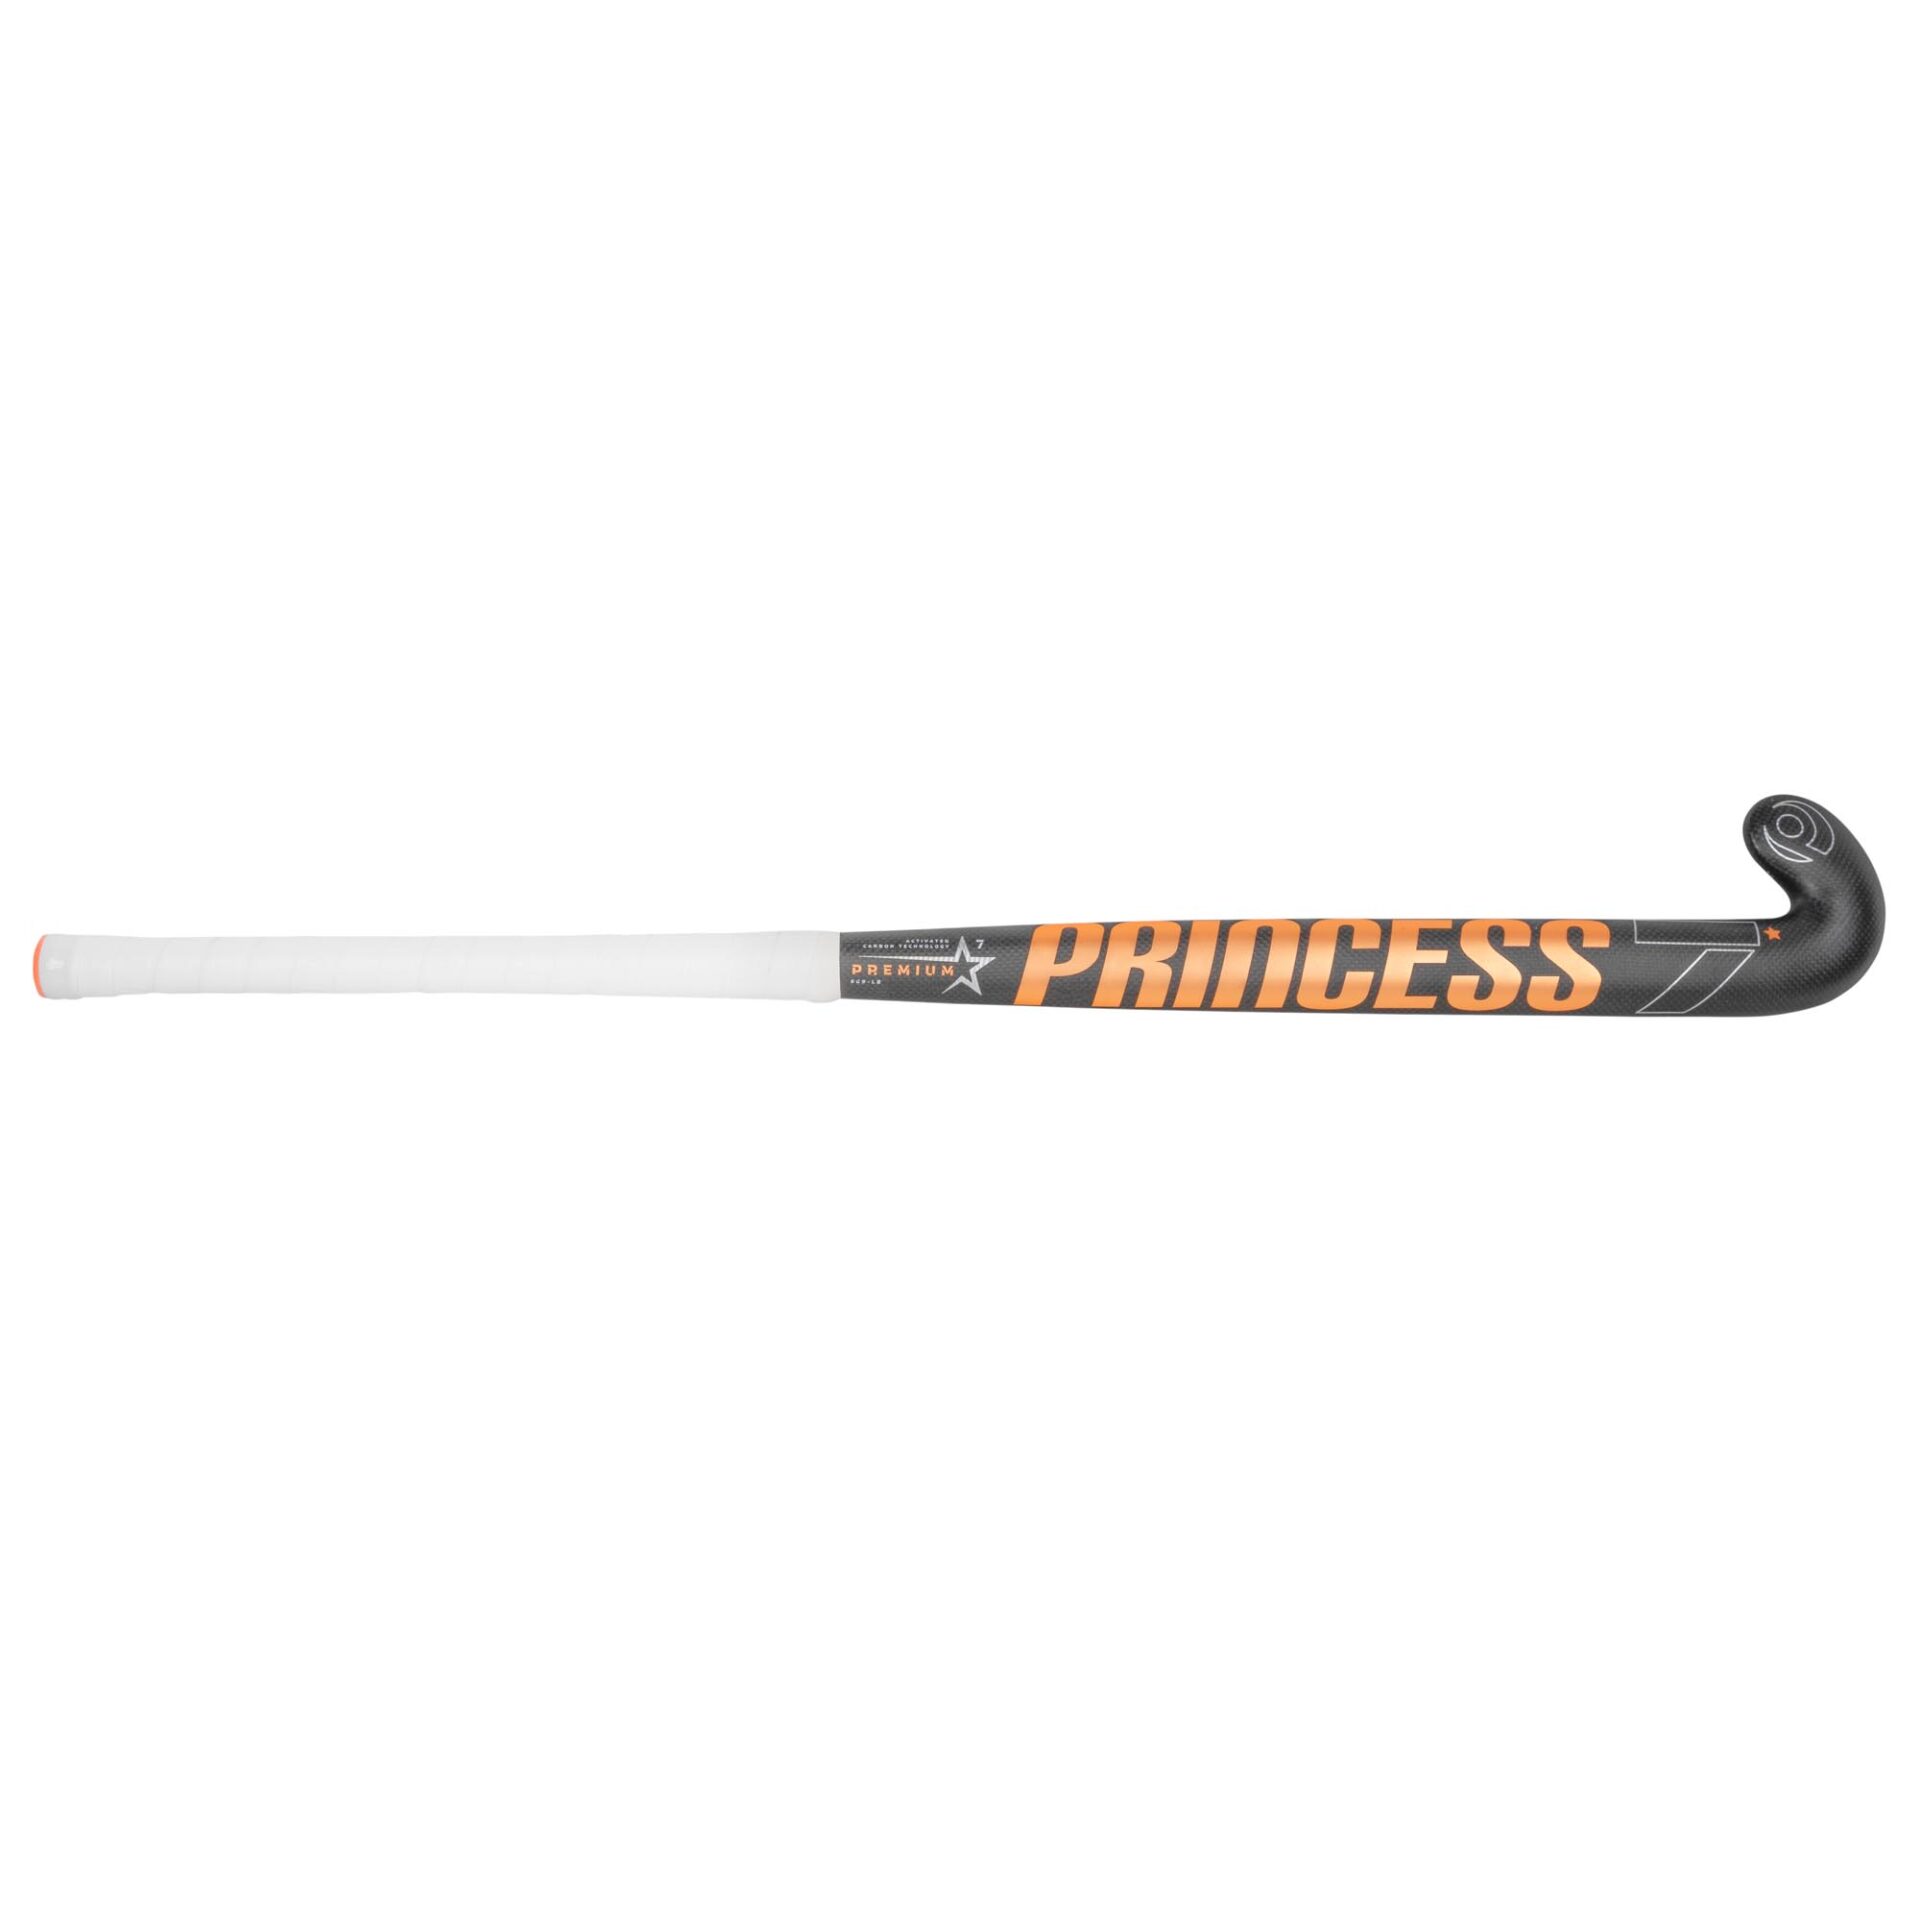 PRINCESS 7 STAR SG9 Composite Field Hockey Stick with free bag & grip 36.5 